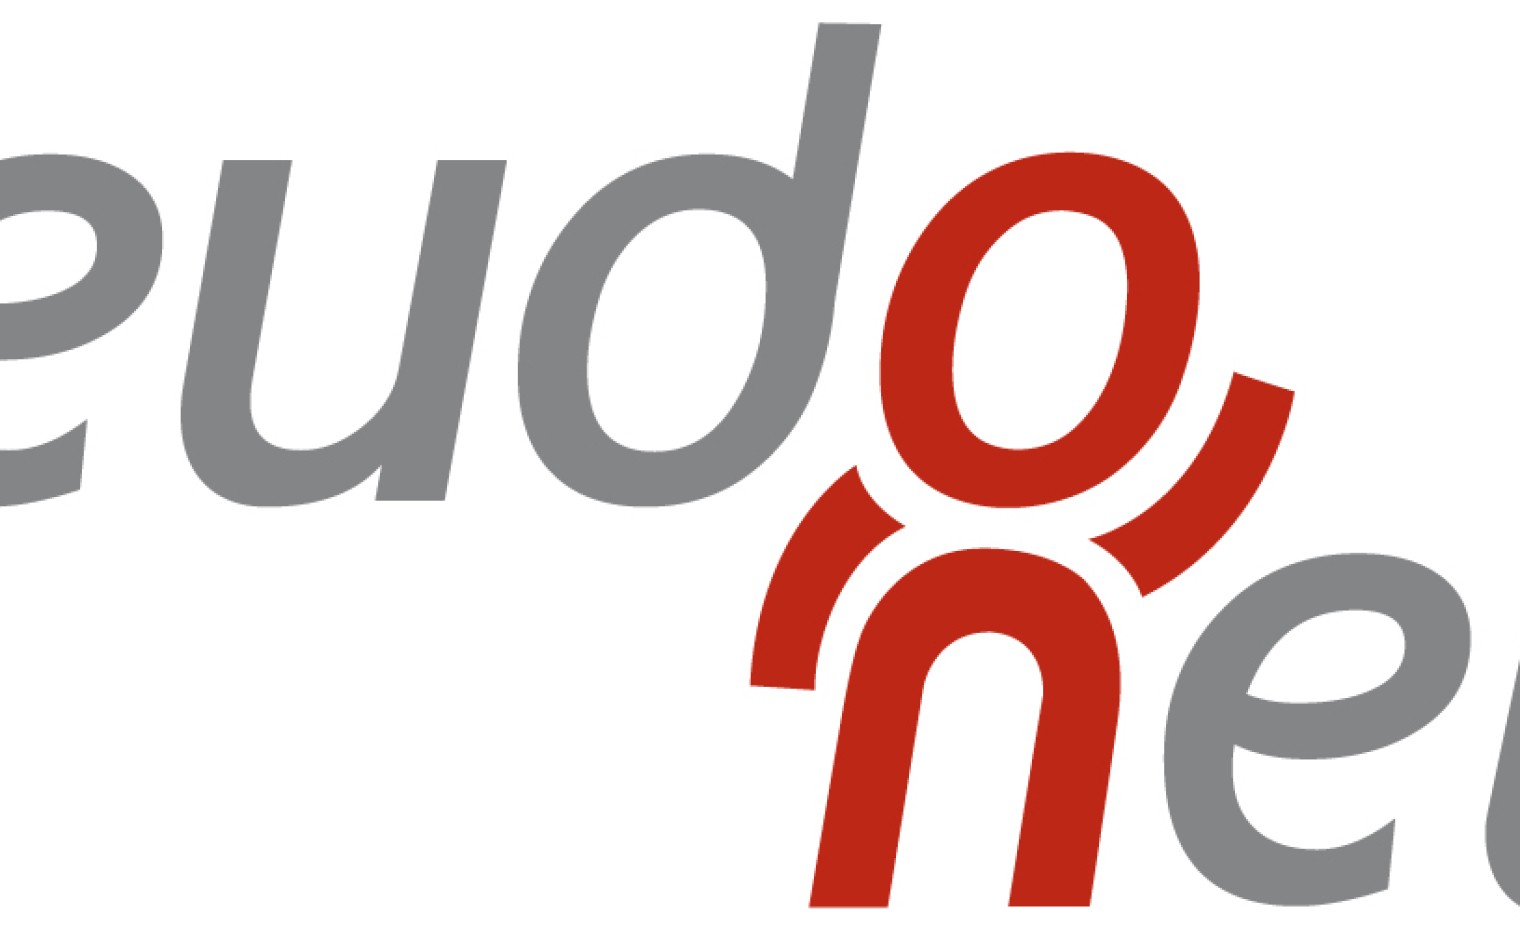 Het logo van eudonet